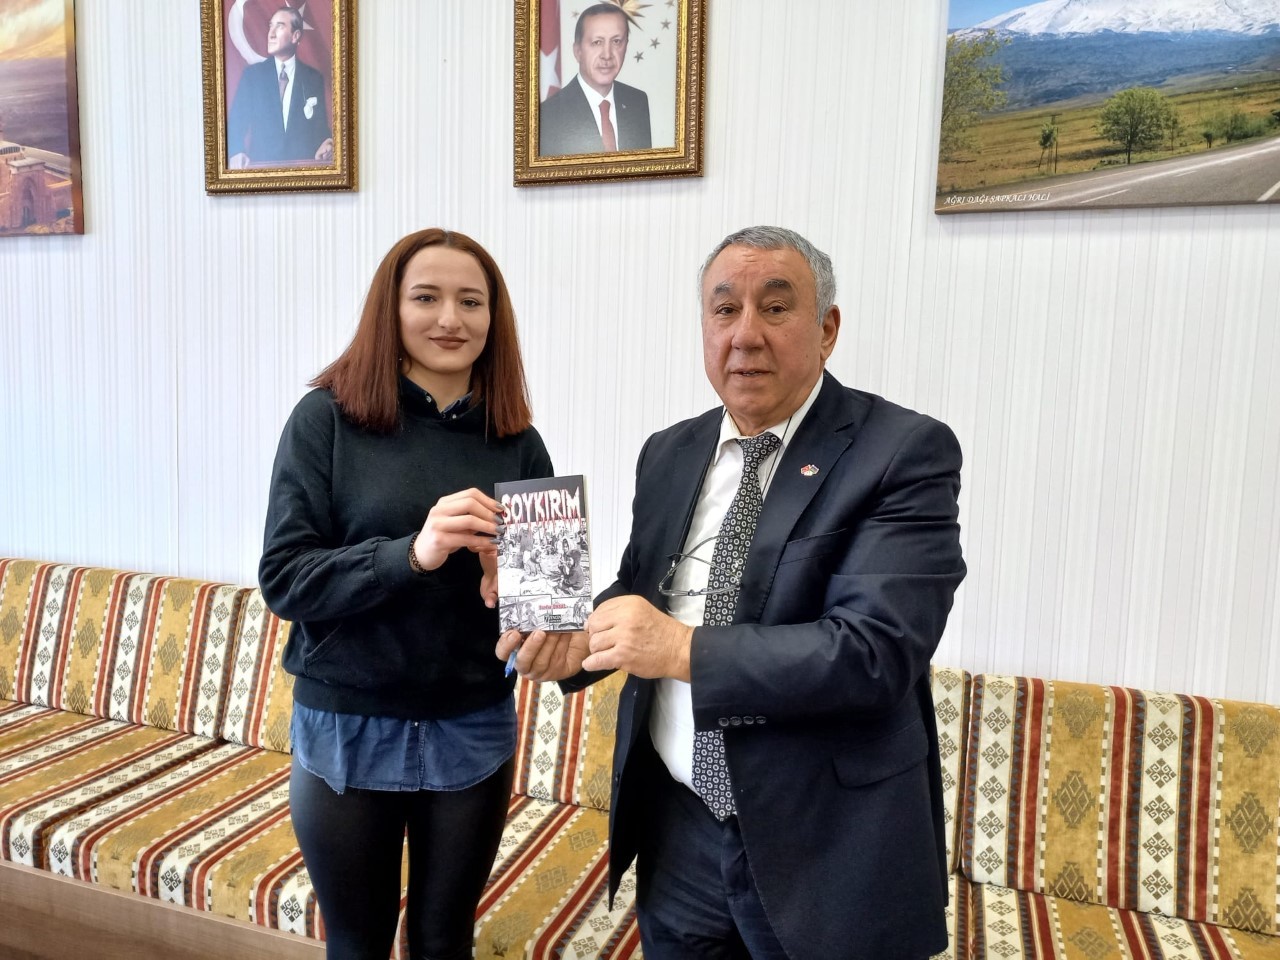 Ünsal, Iğdır Üniversitesi’nde okuyan Azerbaycanlı öğrencilerin sorunlarını dinledi #igdir